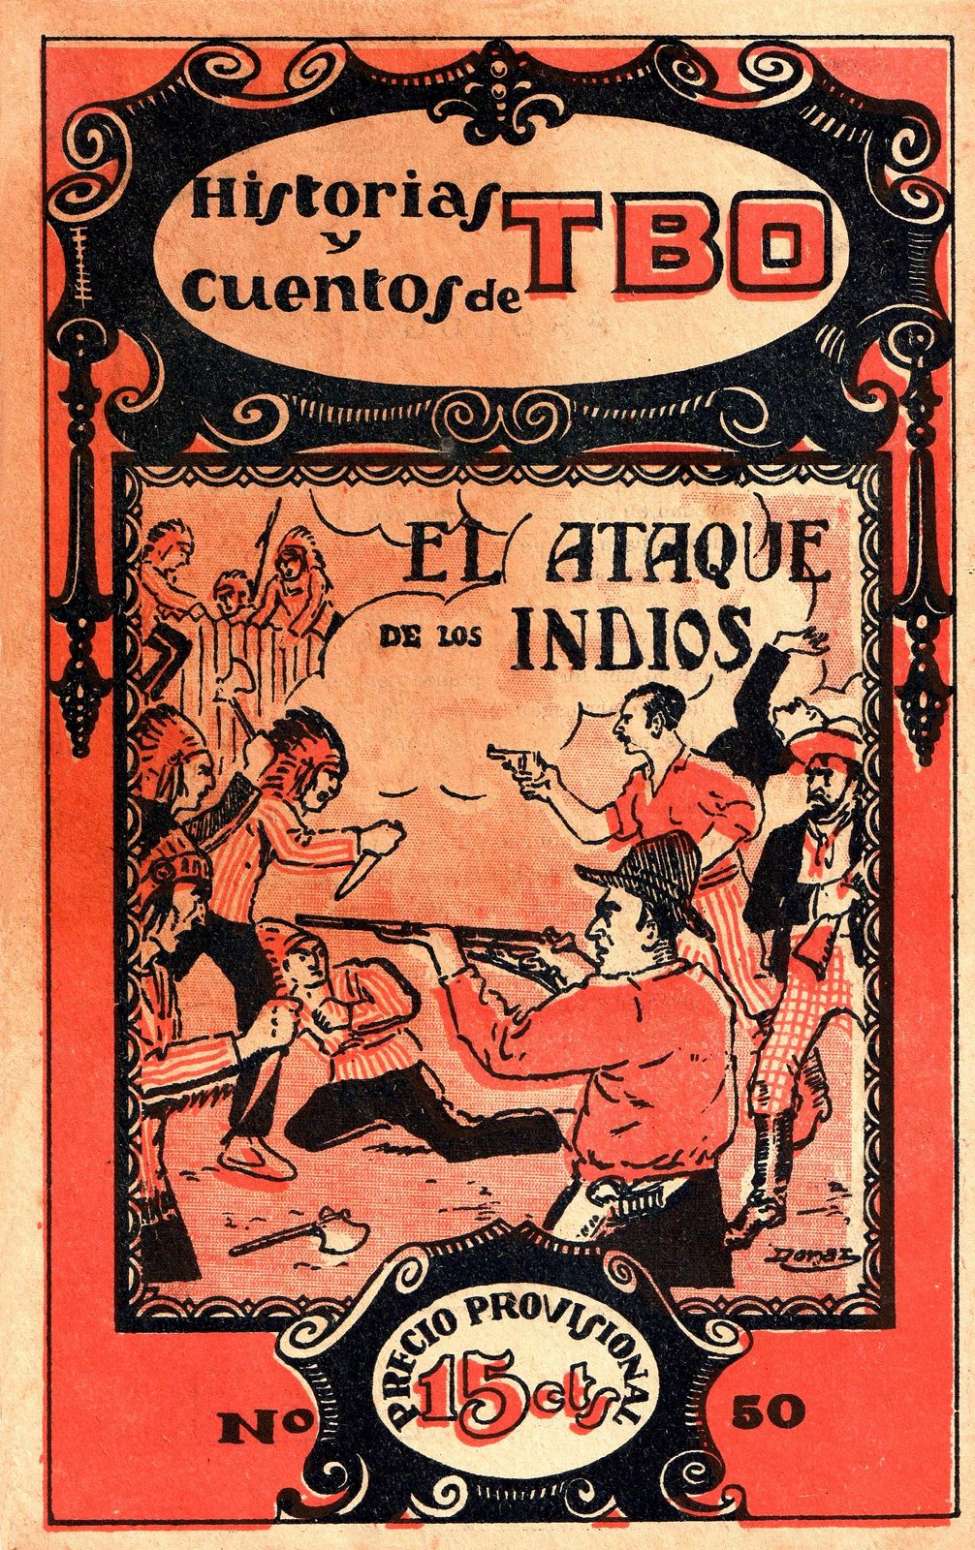 Book Cover For Historias y Cuentos de TBO 50 - El Attaque de los Indios